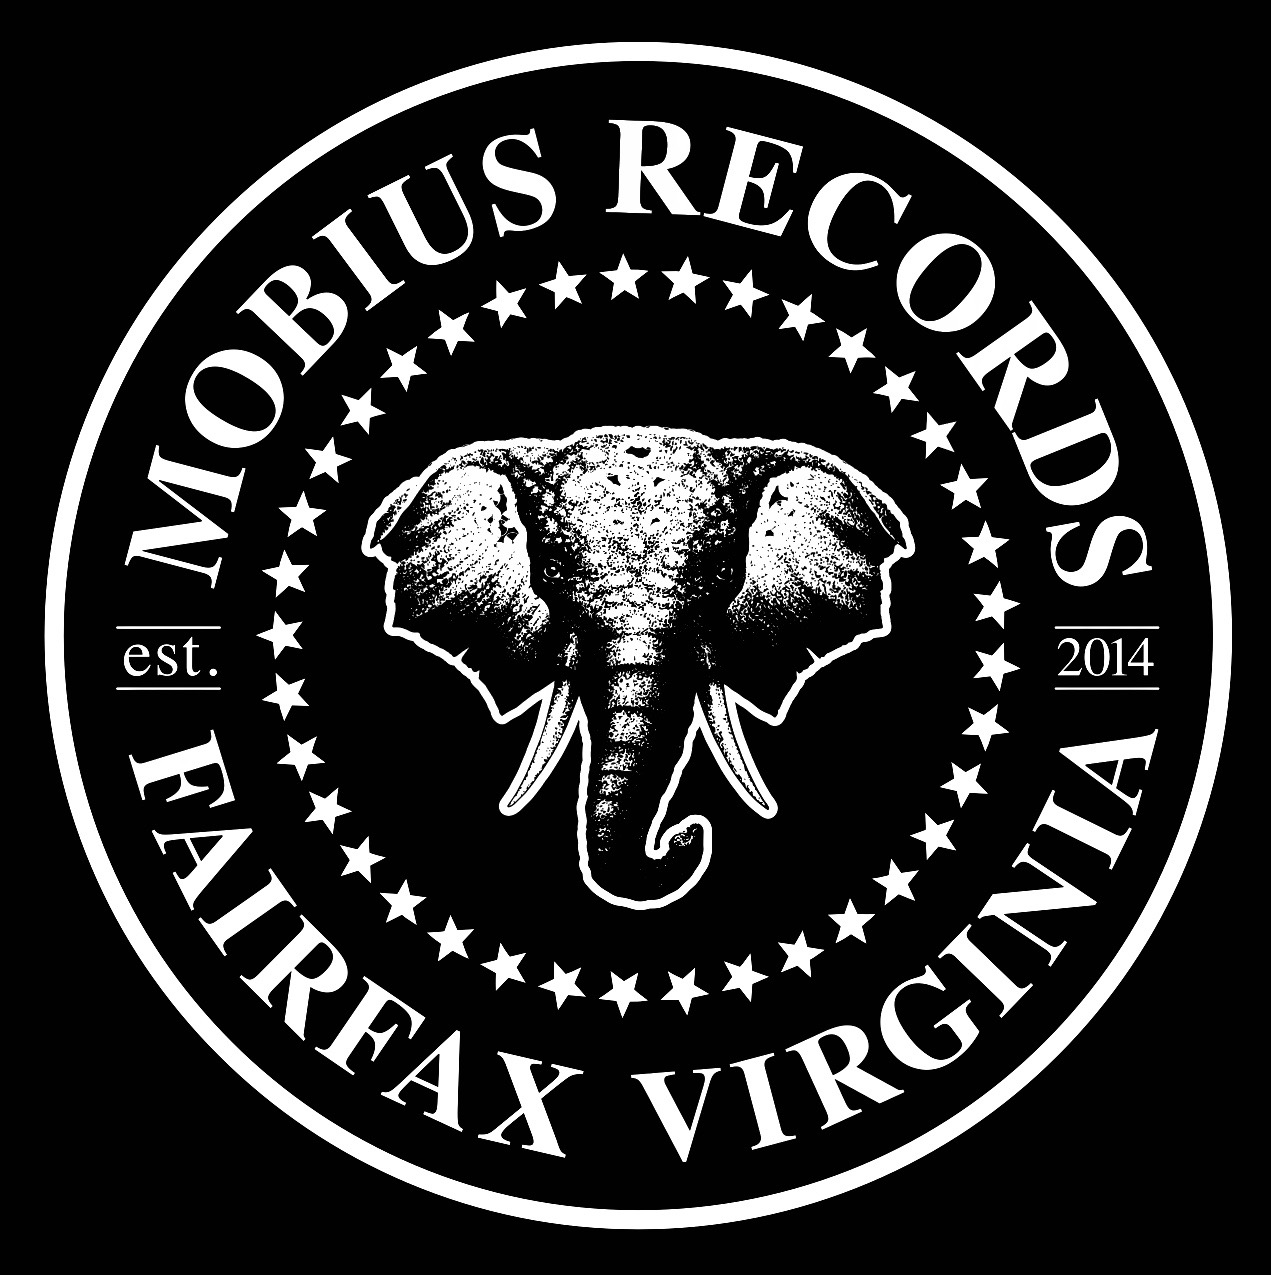 Mobius Records